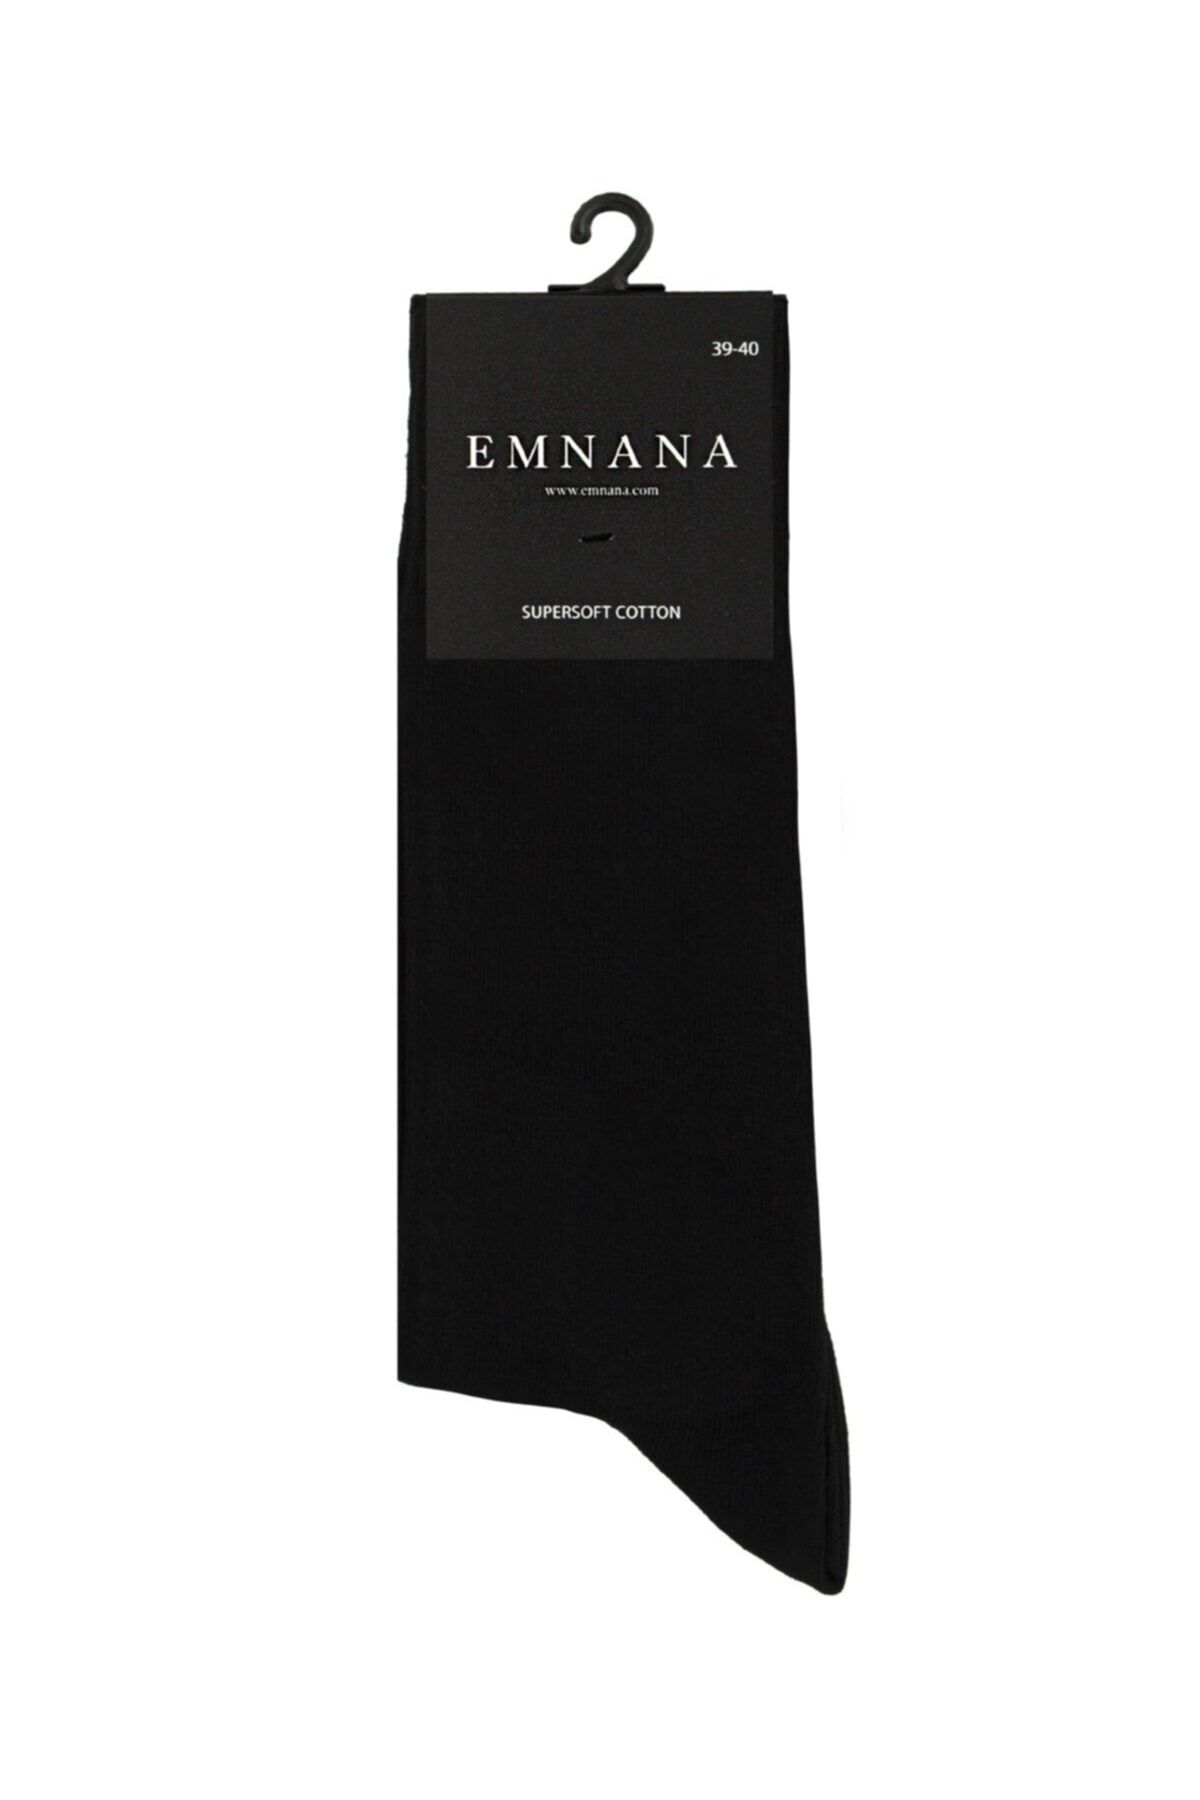 EMNANA 5 Adet Pamuklu Erkek Çorap - Siyah